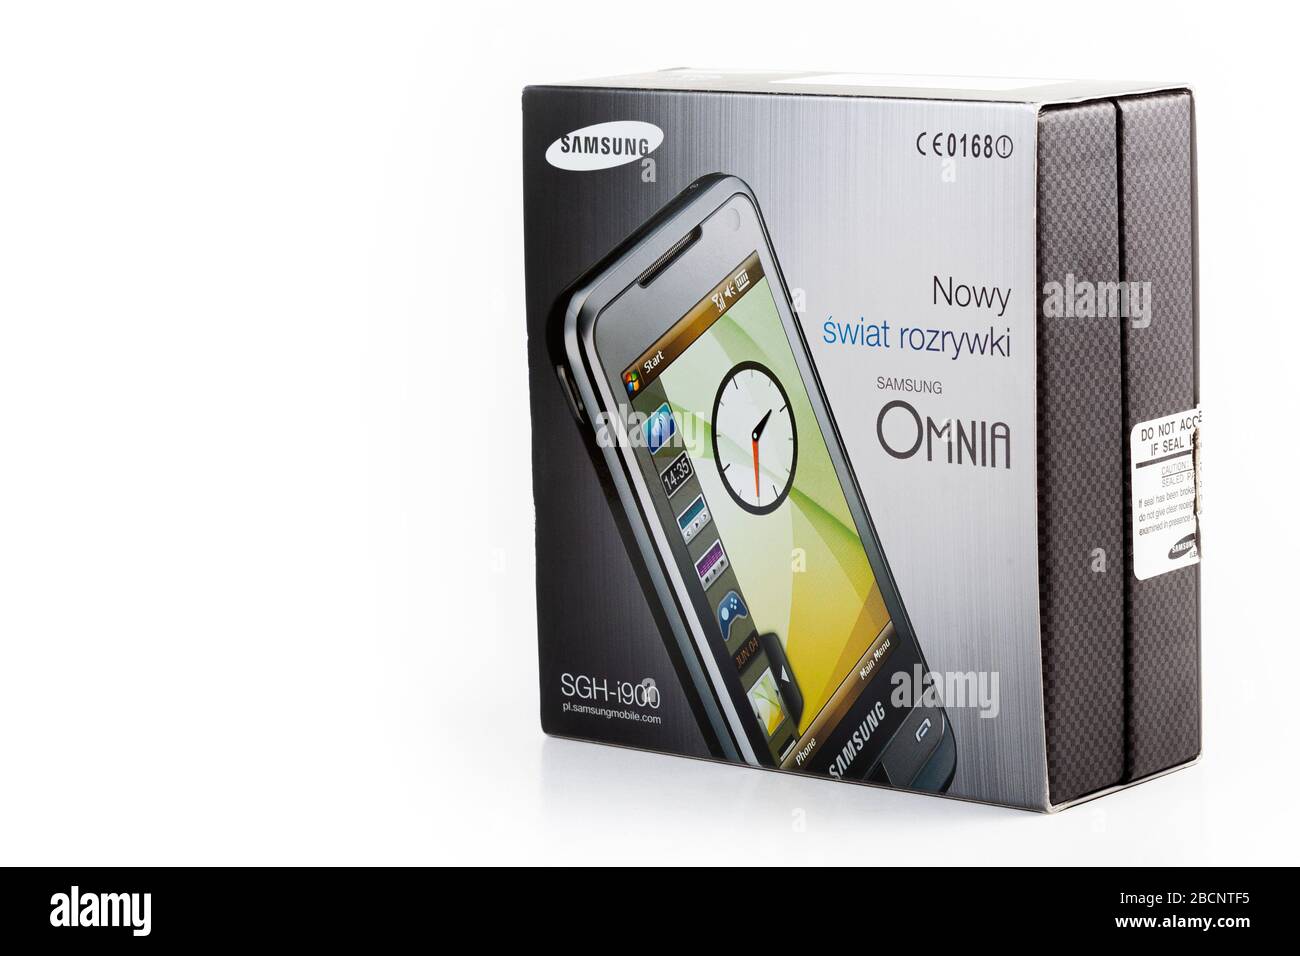 Samsung Omnia SGH-i900 ancien téléphone portable à écran tactile Windows Mobile 6 smartphone tourné isolé produit polonais original boîte de produit à partir de 2008 / 2009 Banque D'Images